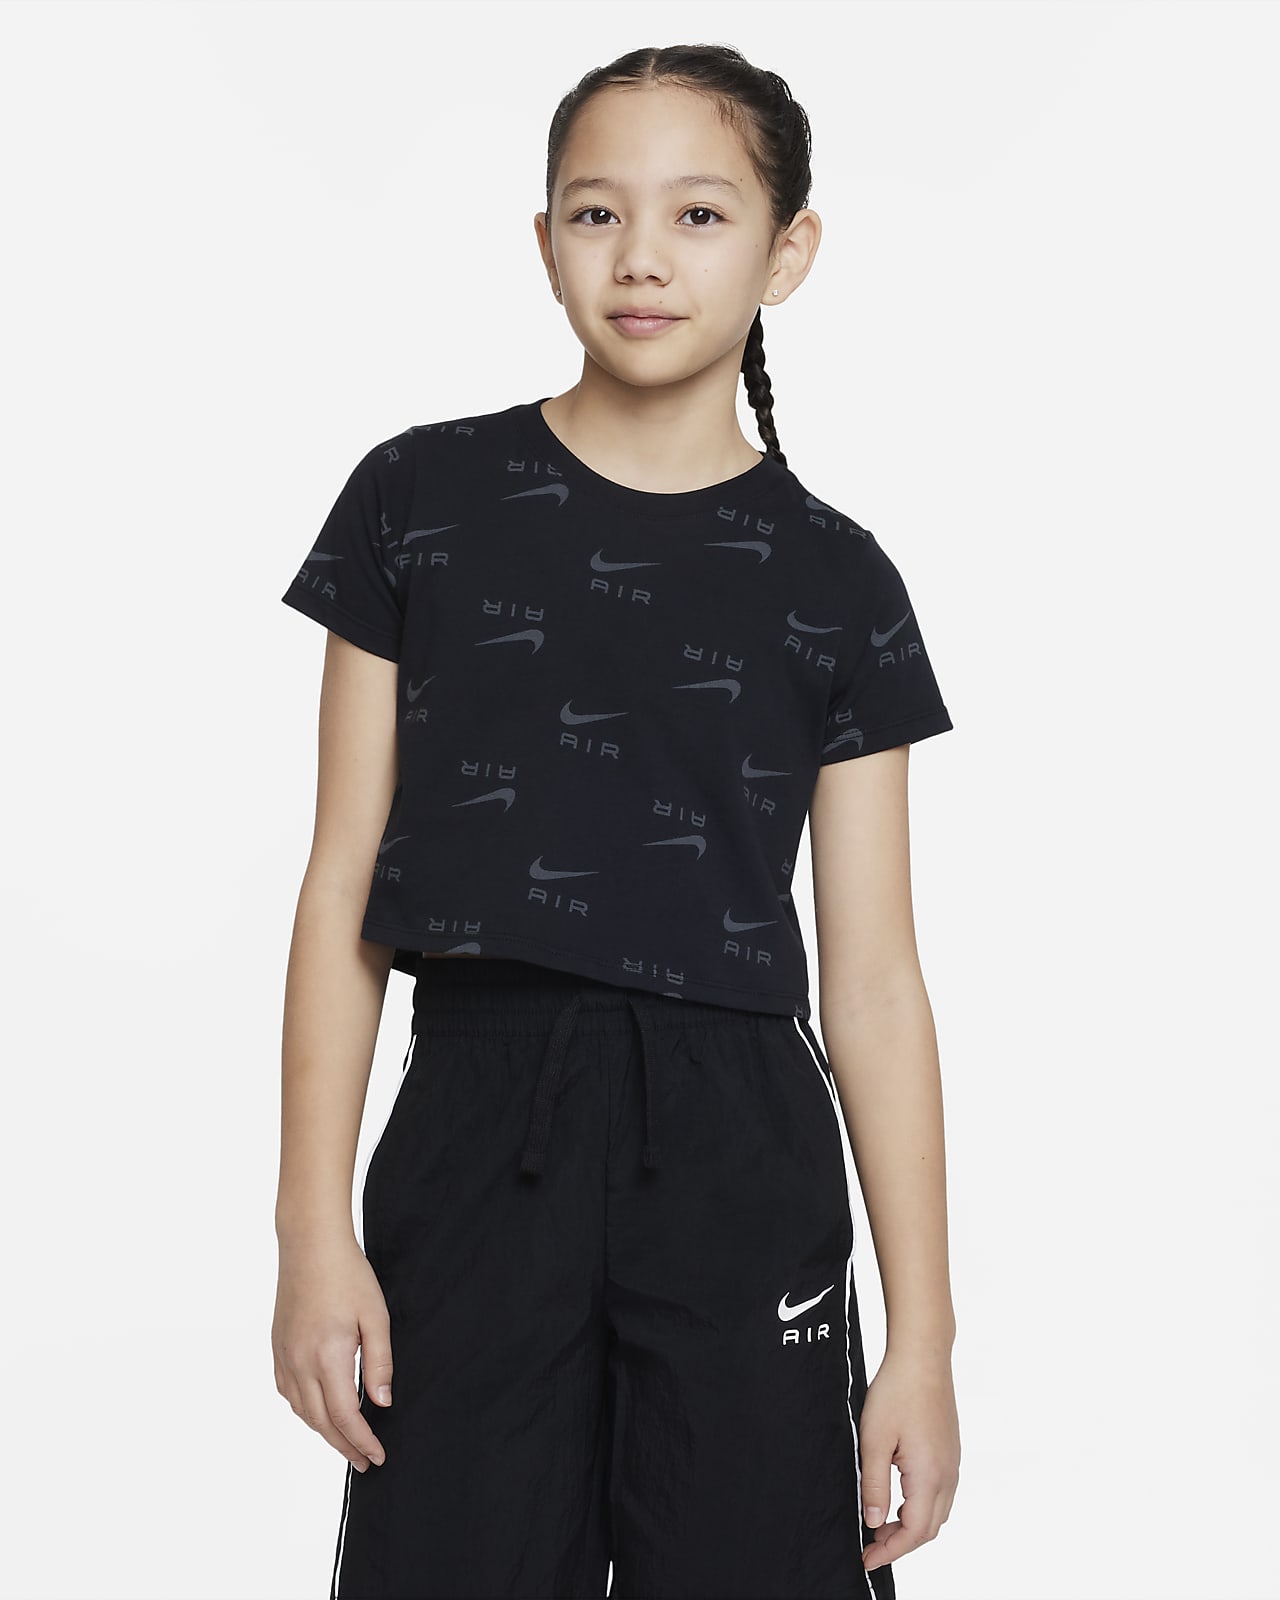 เสื้อยืดเอวลอยเด็กโต Nike Air (หญิง)